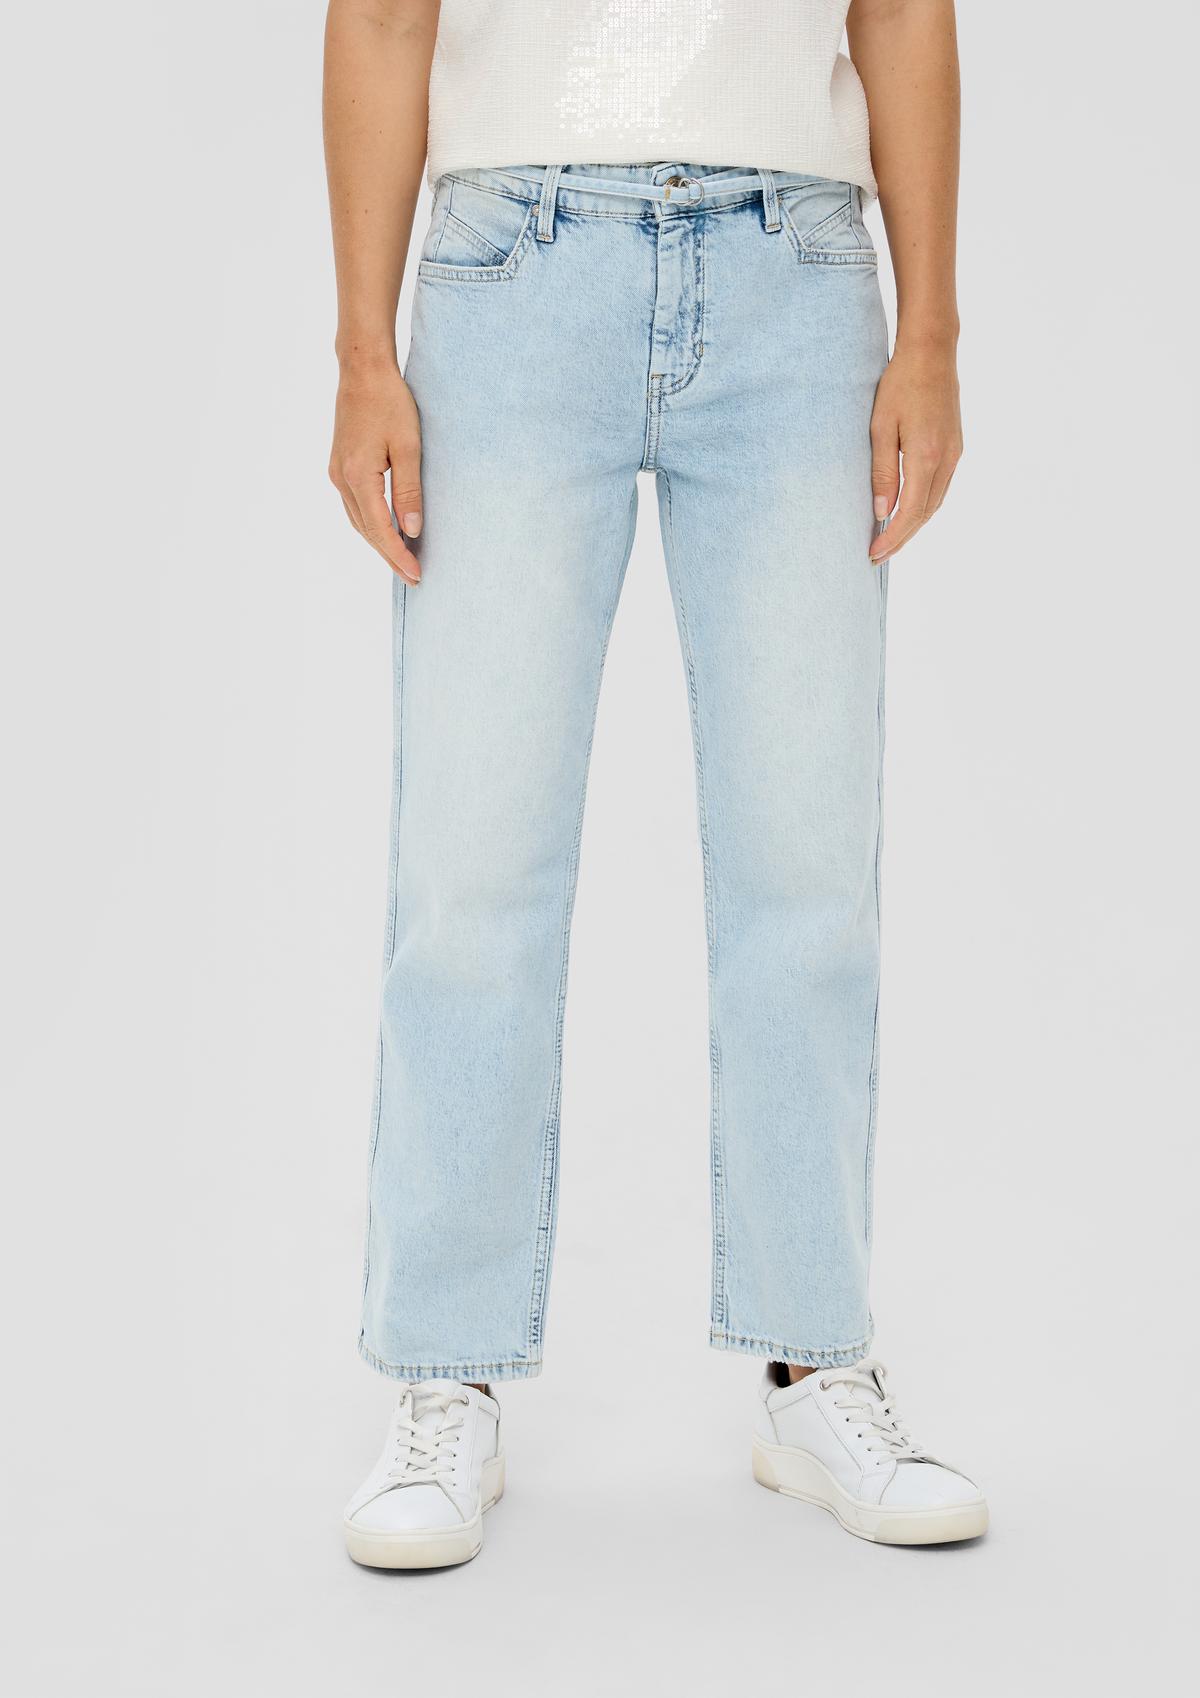 s.Oliver Krajše jeans hlače Karolin / kroj Regular Fit / Mid Rise / ravne hlačnice